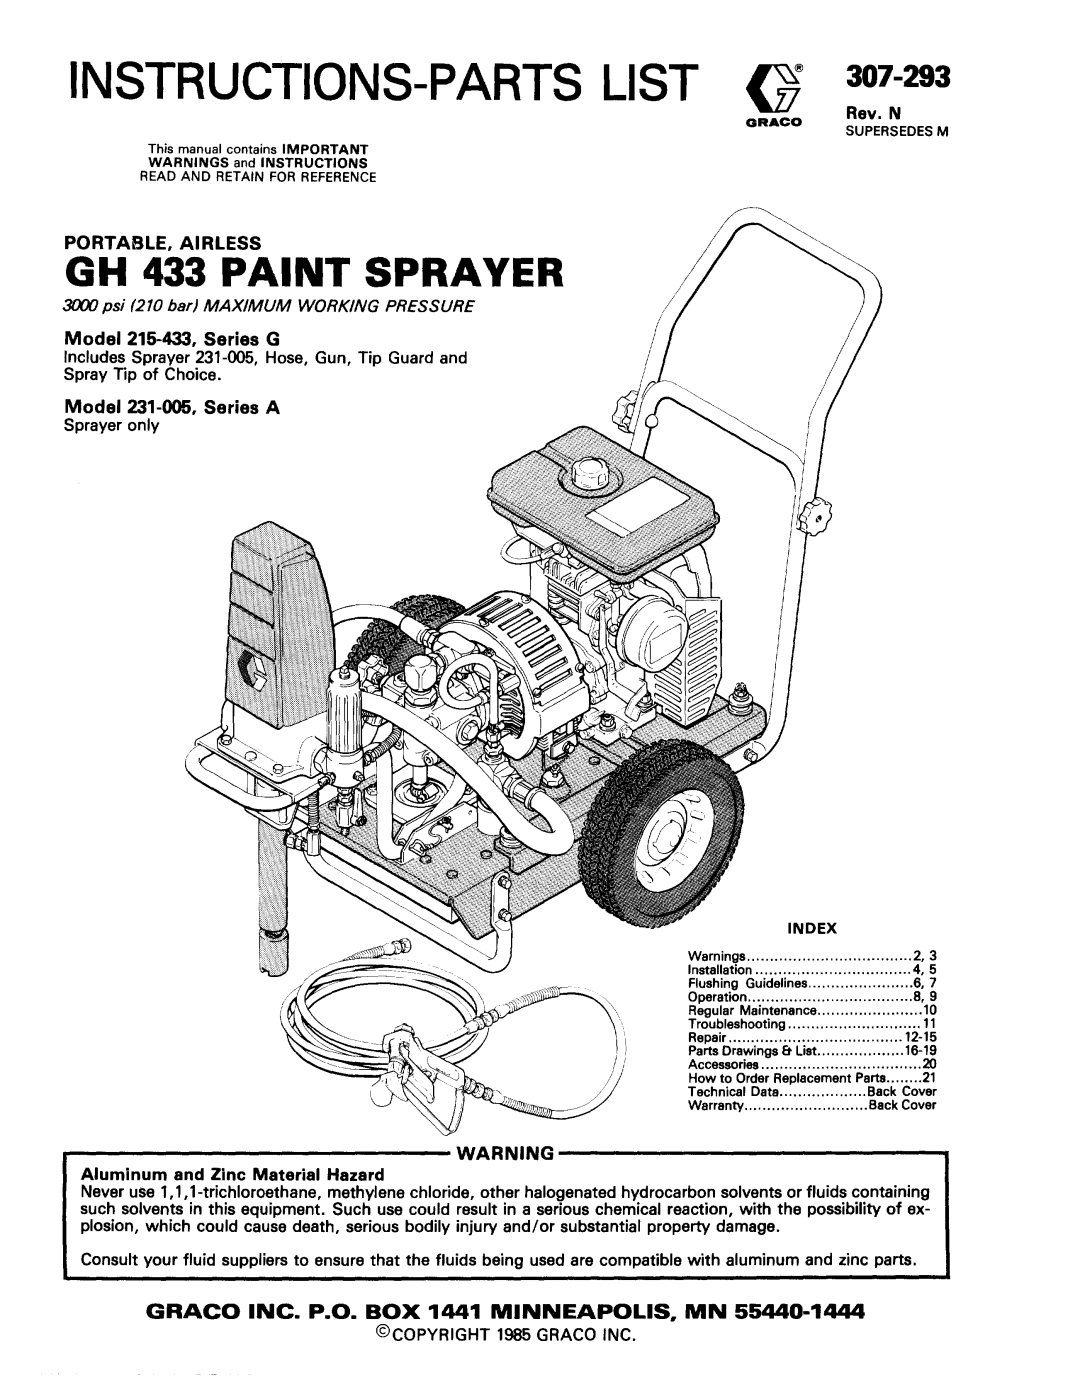 Graco 239-327 manual Instructions-Partslist, 308±739, Part No. 239±327, Series A, Rev. A, 15 1 Ratio Monark Pump, 07196 